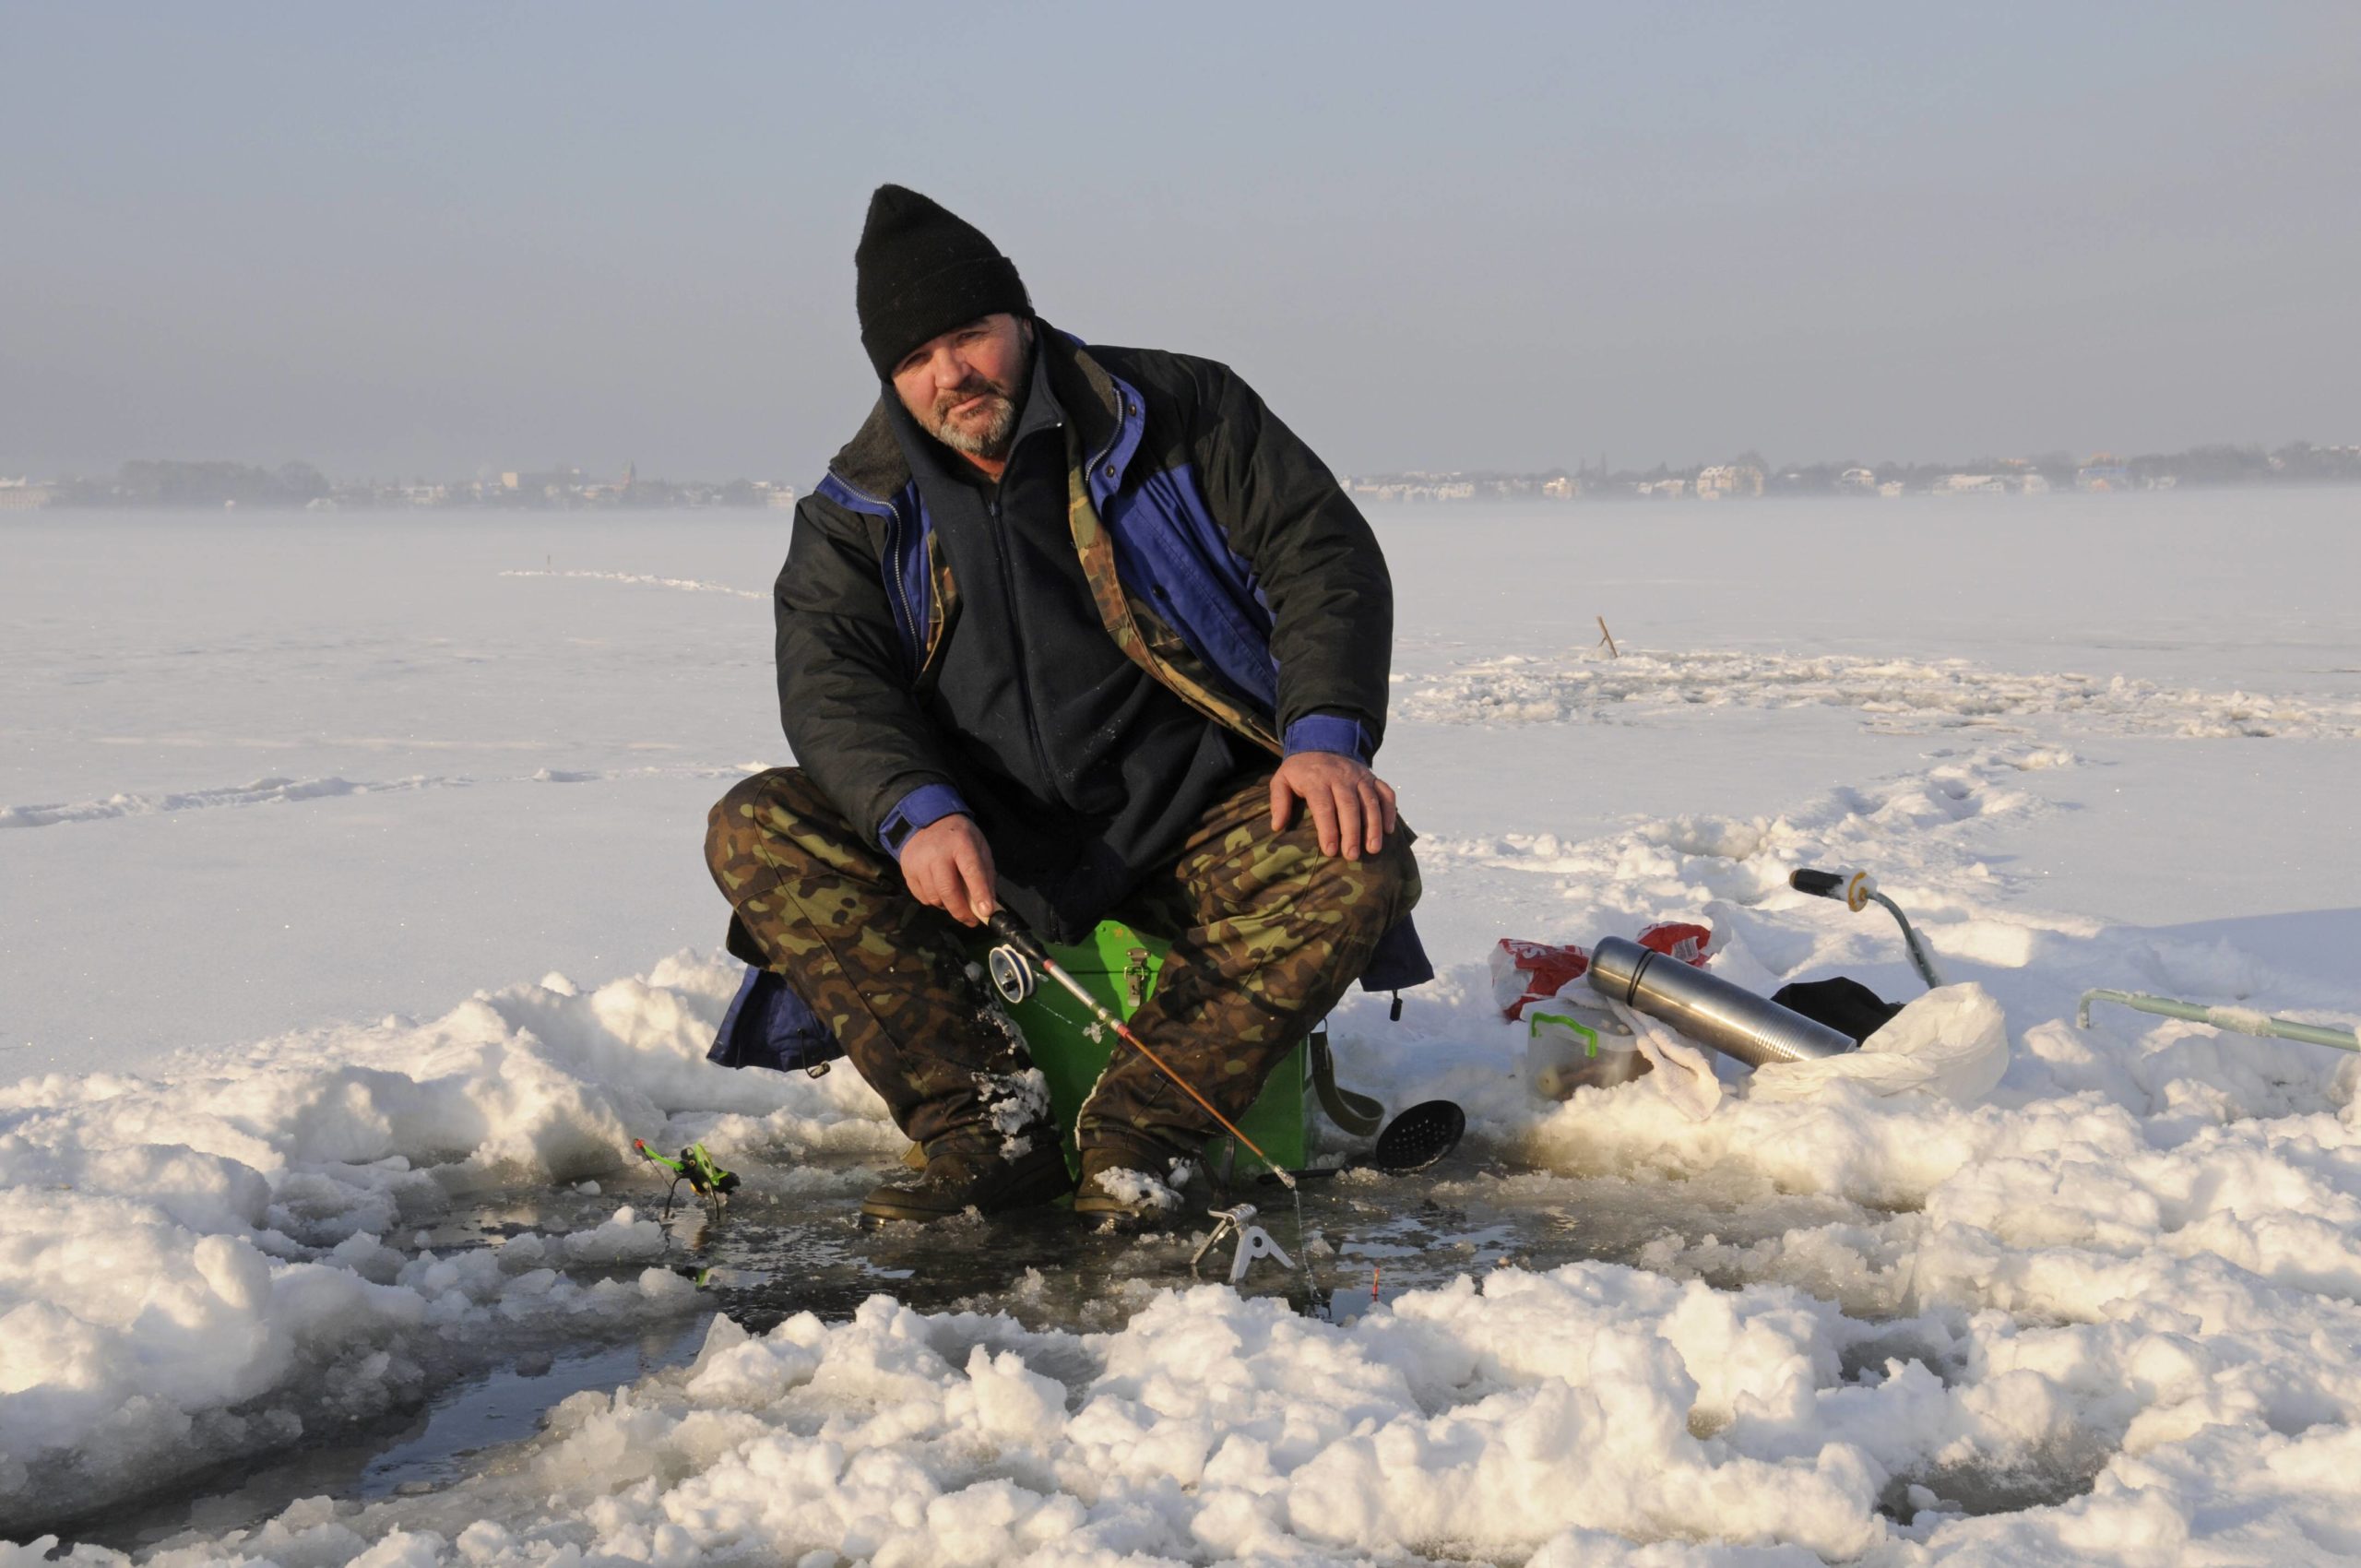 Wintersport Wer Lust hat aufs Fischen an der eiskalten Winterluft, kann in Berlin einen Angelschein nur fürs Eisangeln an einem bestimmten Gewässer machen. 